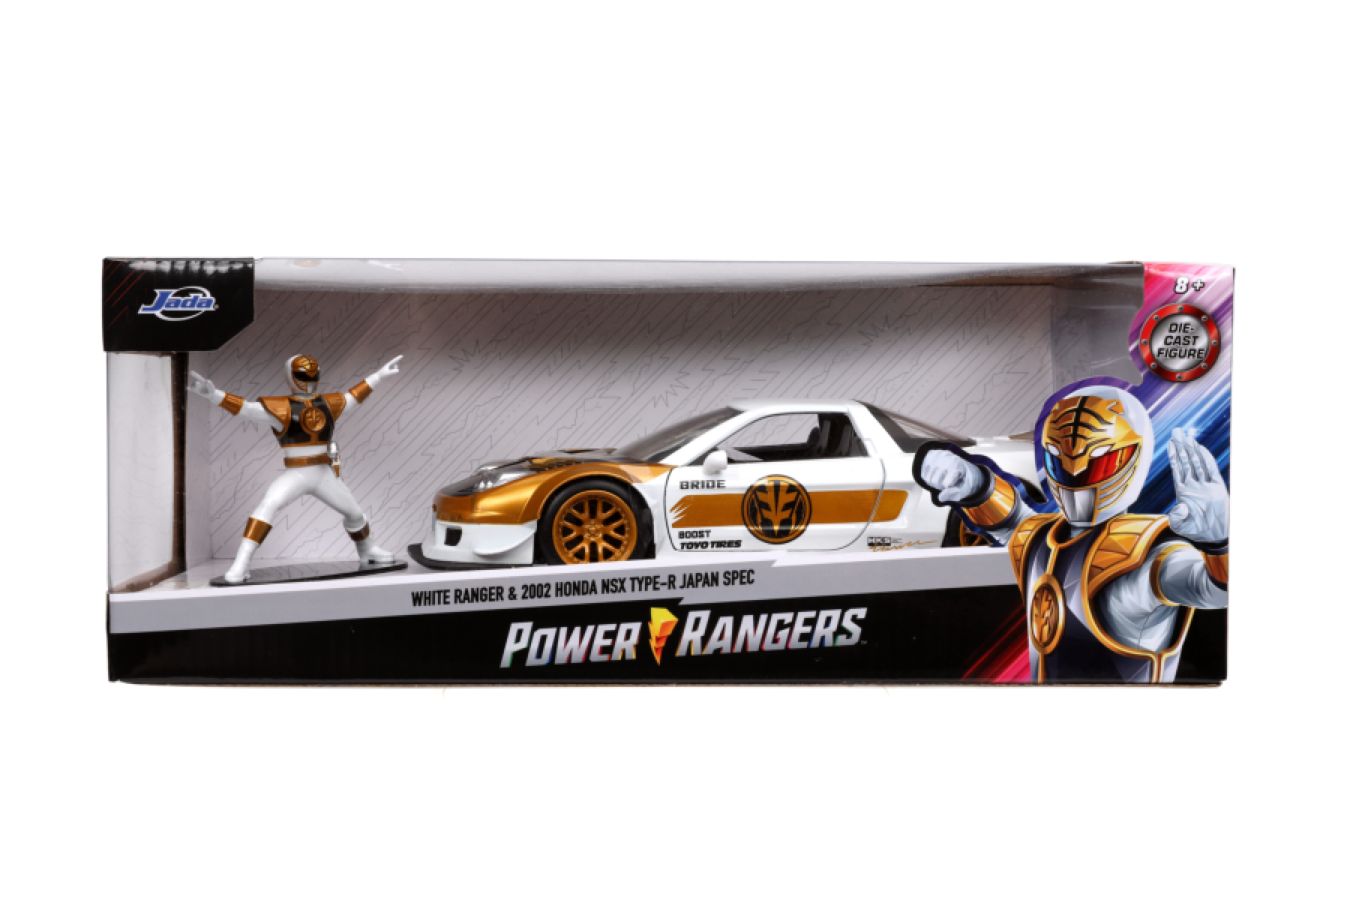 Power Rangers - 2002 Honda NSX 1:24 with White Ranger Figure